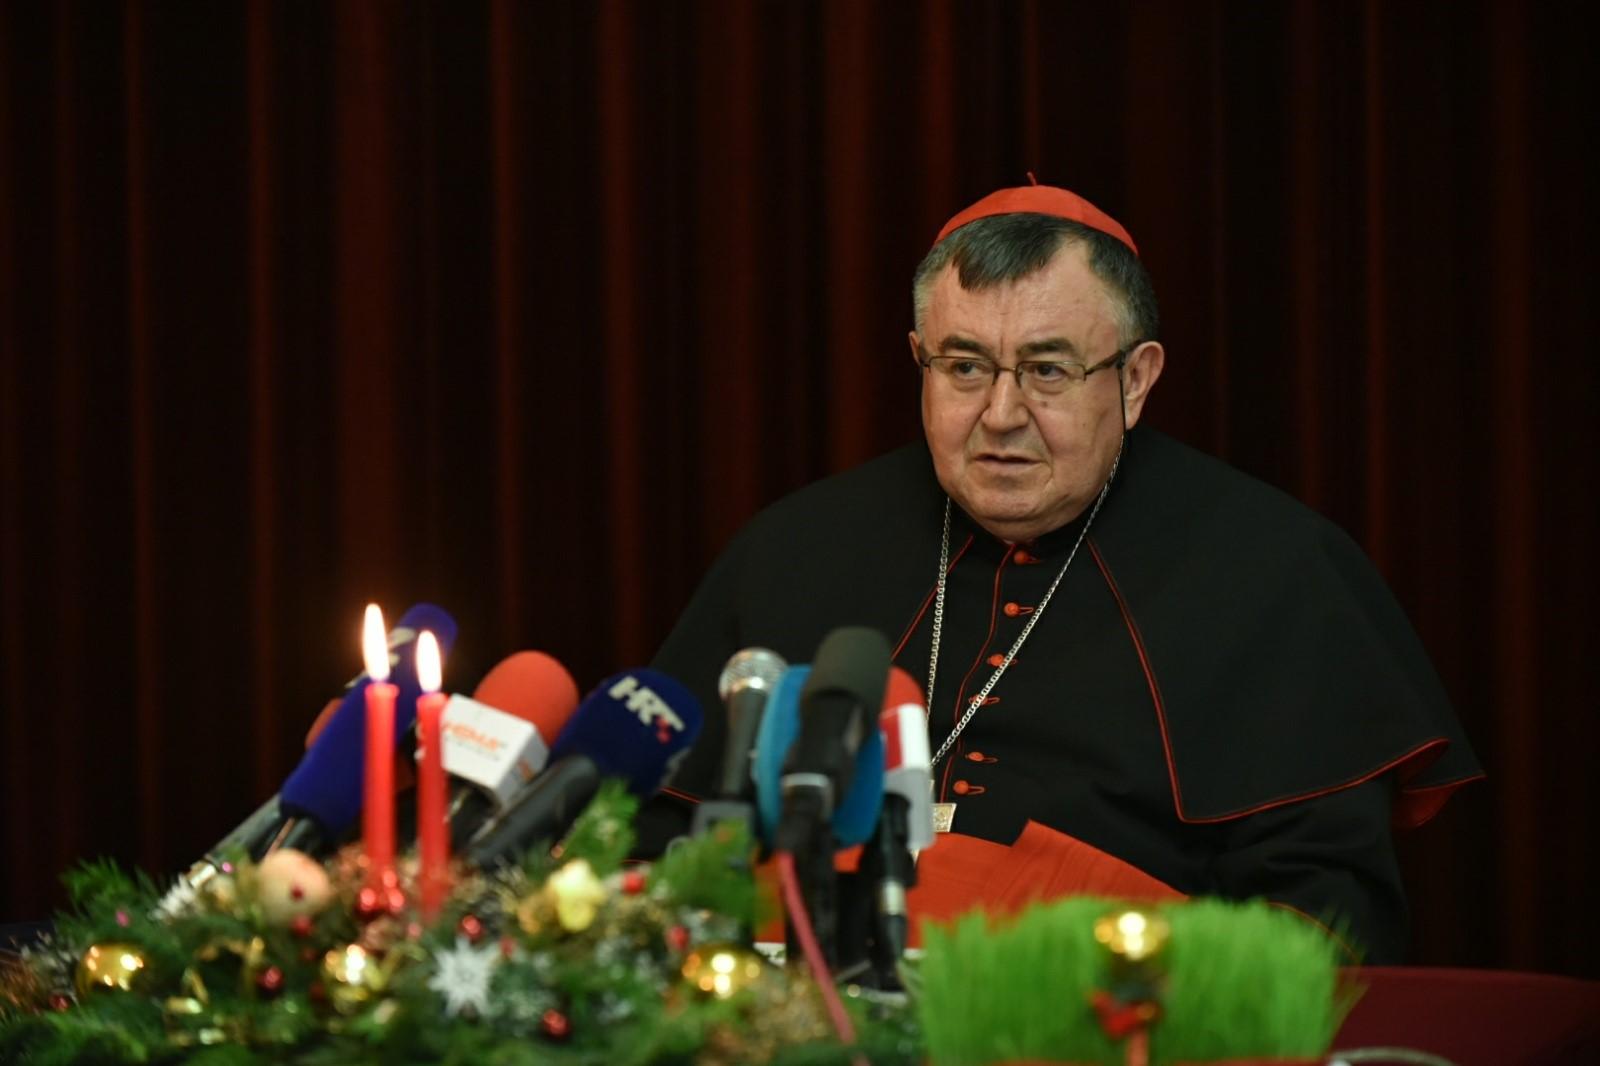 Kardinal Vinko Puljić: Zato što volimo ovu svoju zemlju zato nam i smeta kada neko manipulira historijom - Avaz